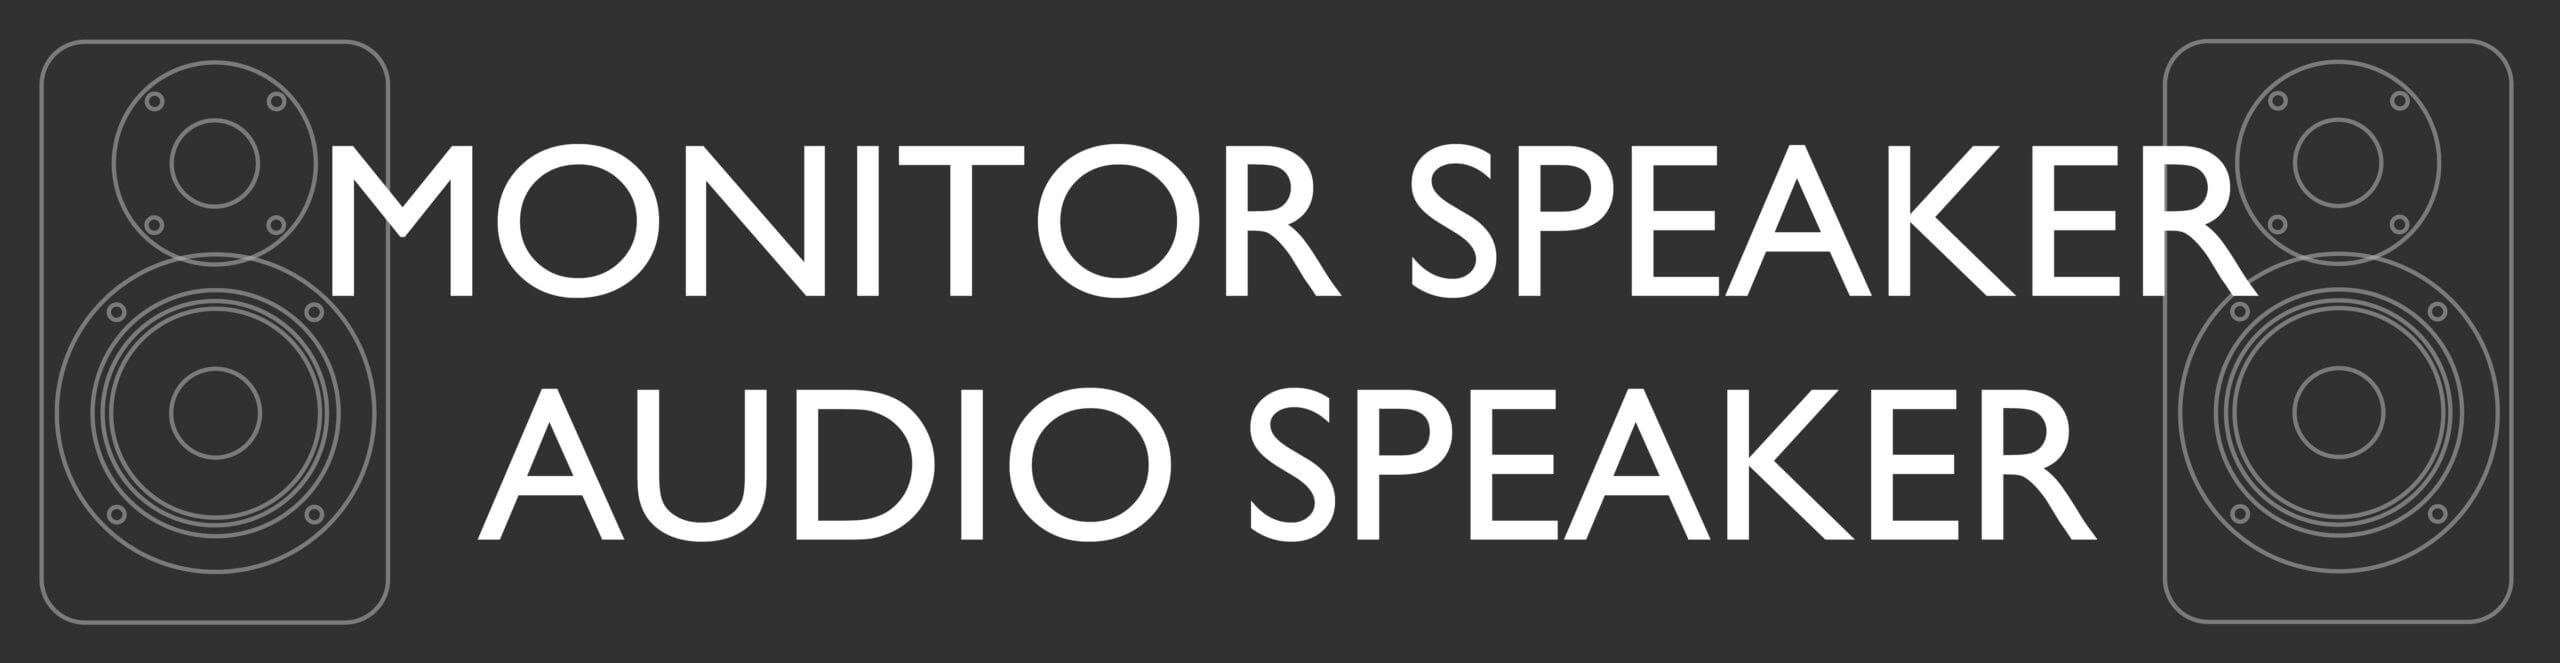 MONITOR SPEAKER/AUDIO SPEAKER